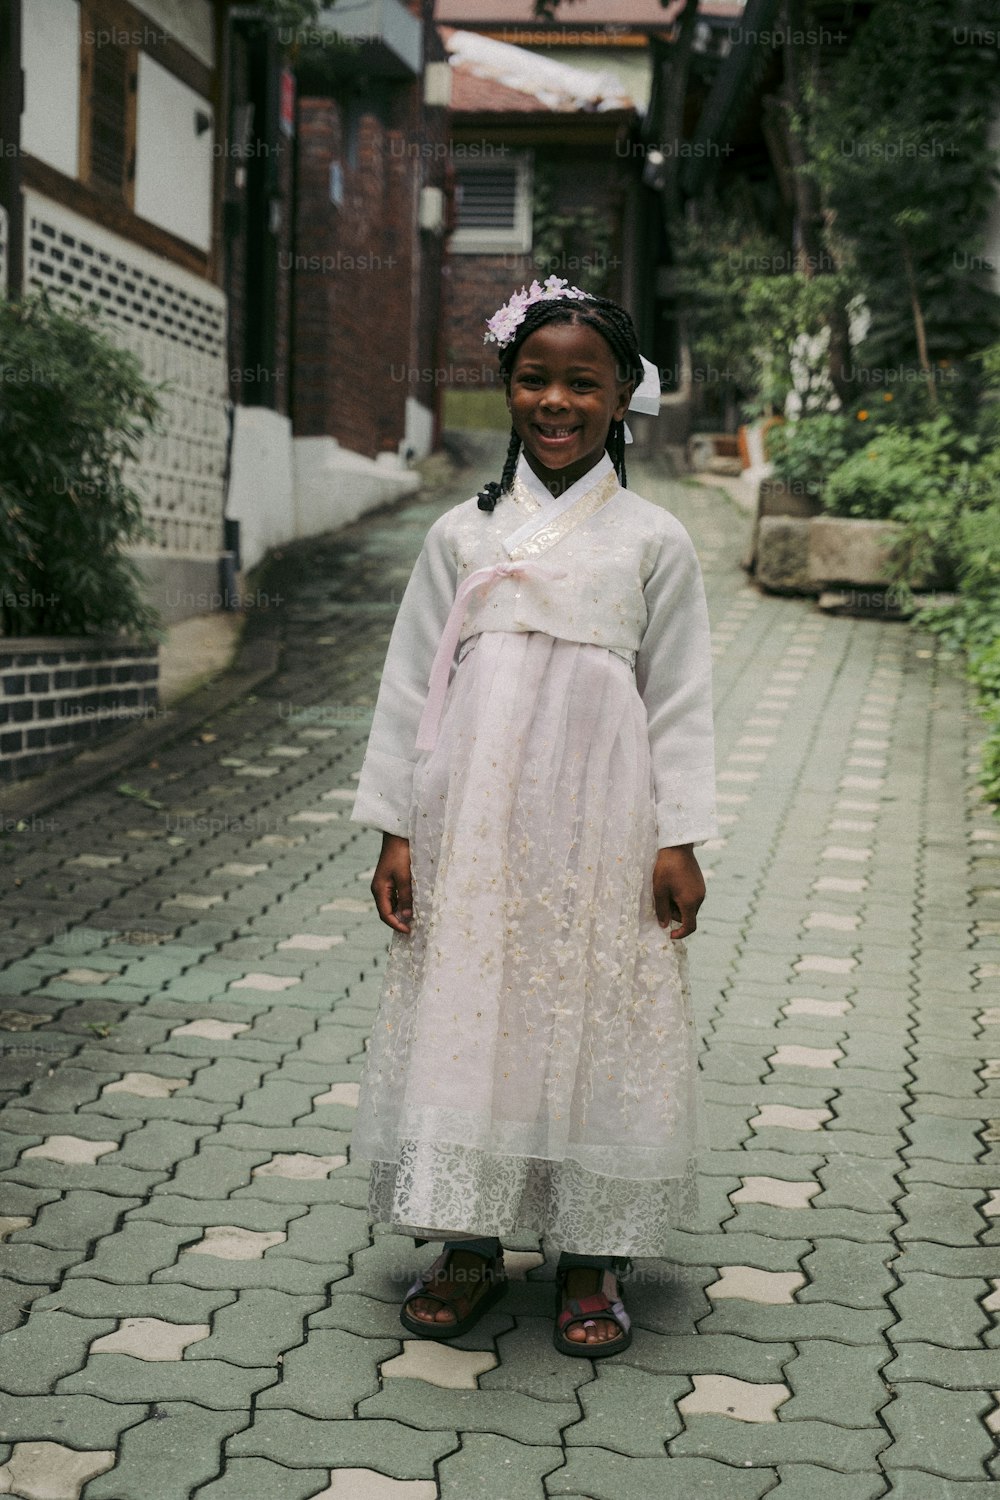 조약돌 거리에 서 있는 하얀 드레스를 입은 어린 소녀